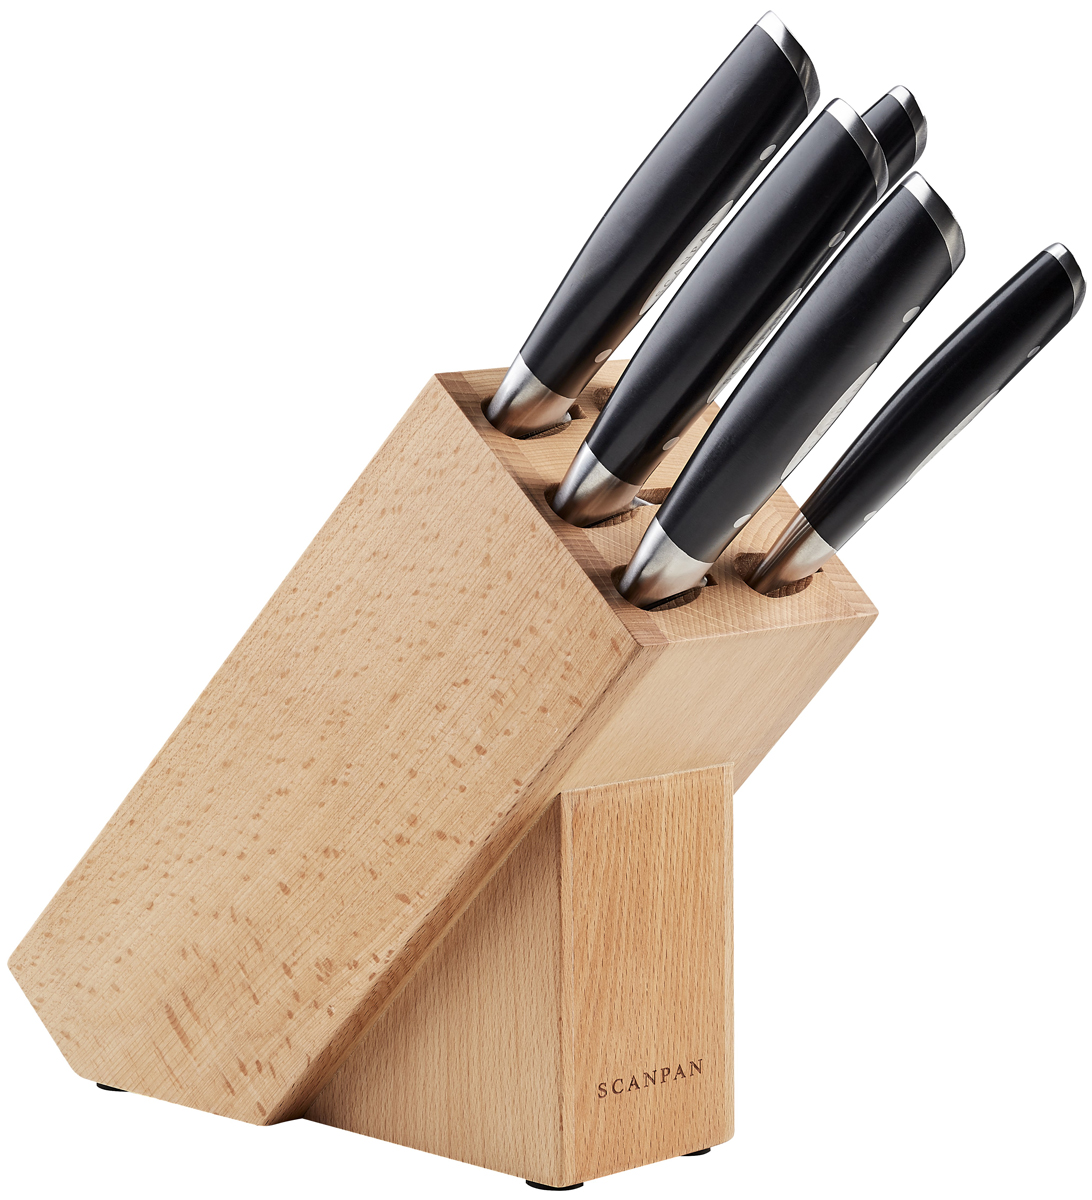 фото Набор кухонных ножей Scanpan Classic, с подставкой, 92000600, серебристый, 6 предметов